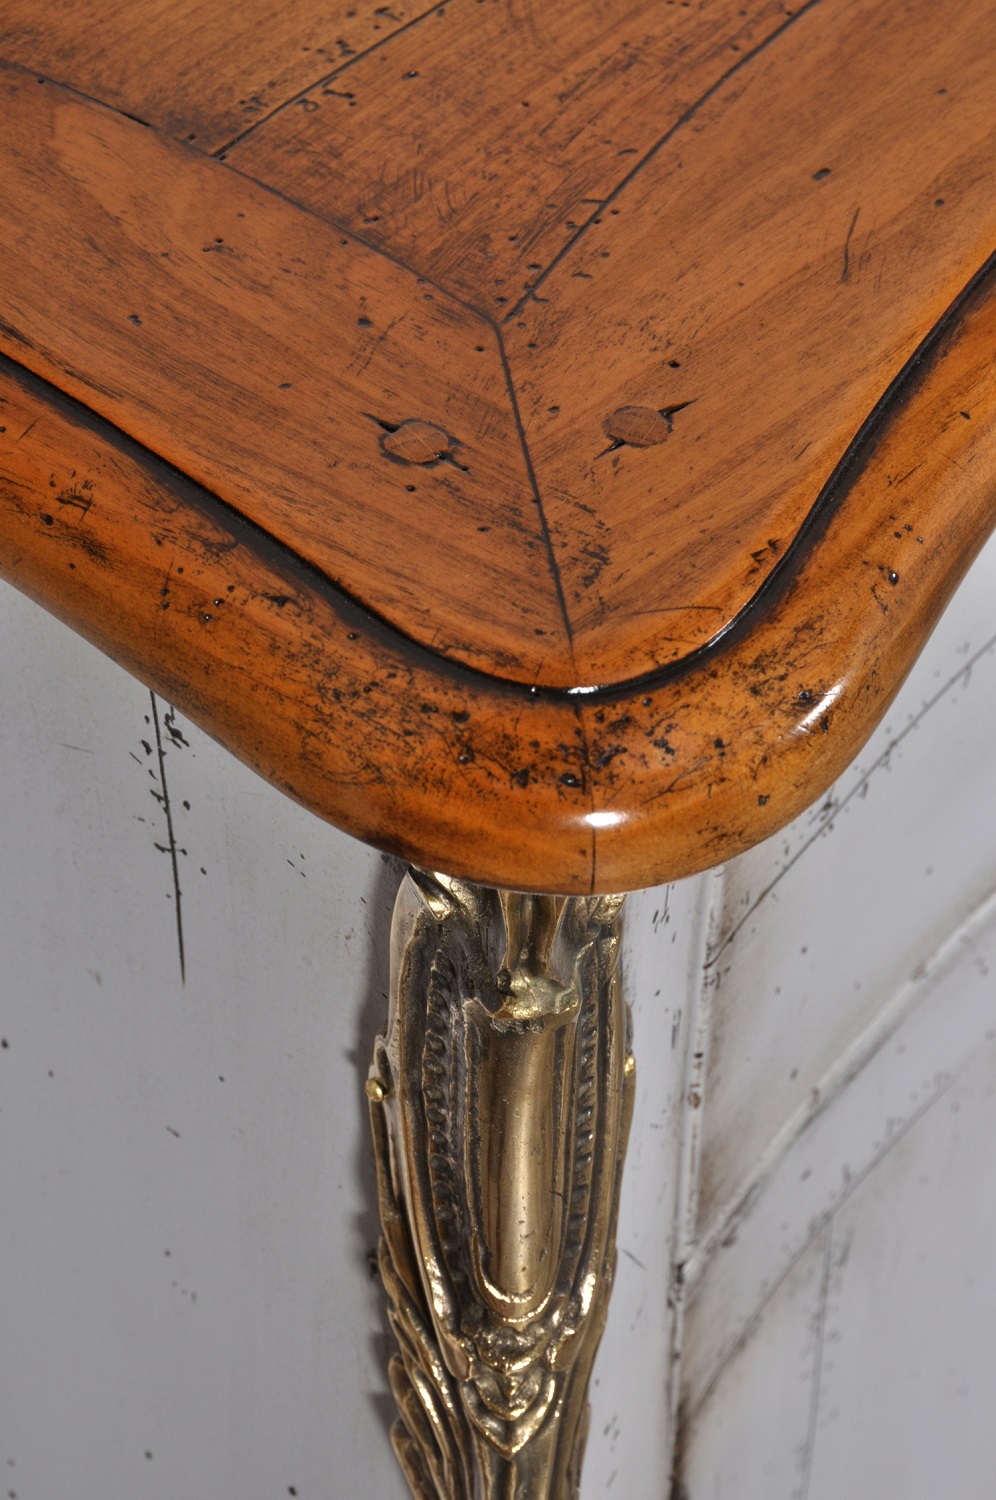 sagomatura del piano in legno di ciliegio massello con profilo modanato a becco a civetta lavorazioni riprodotte dal mobile originale del settecento veneziano